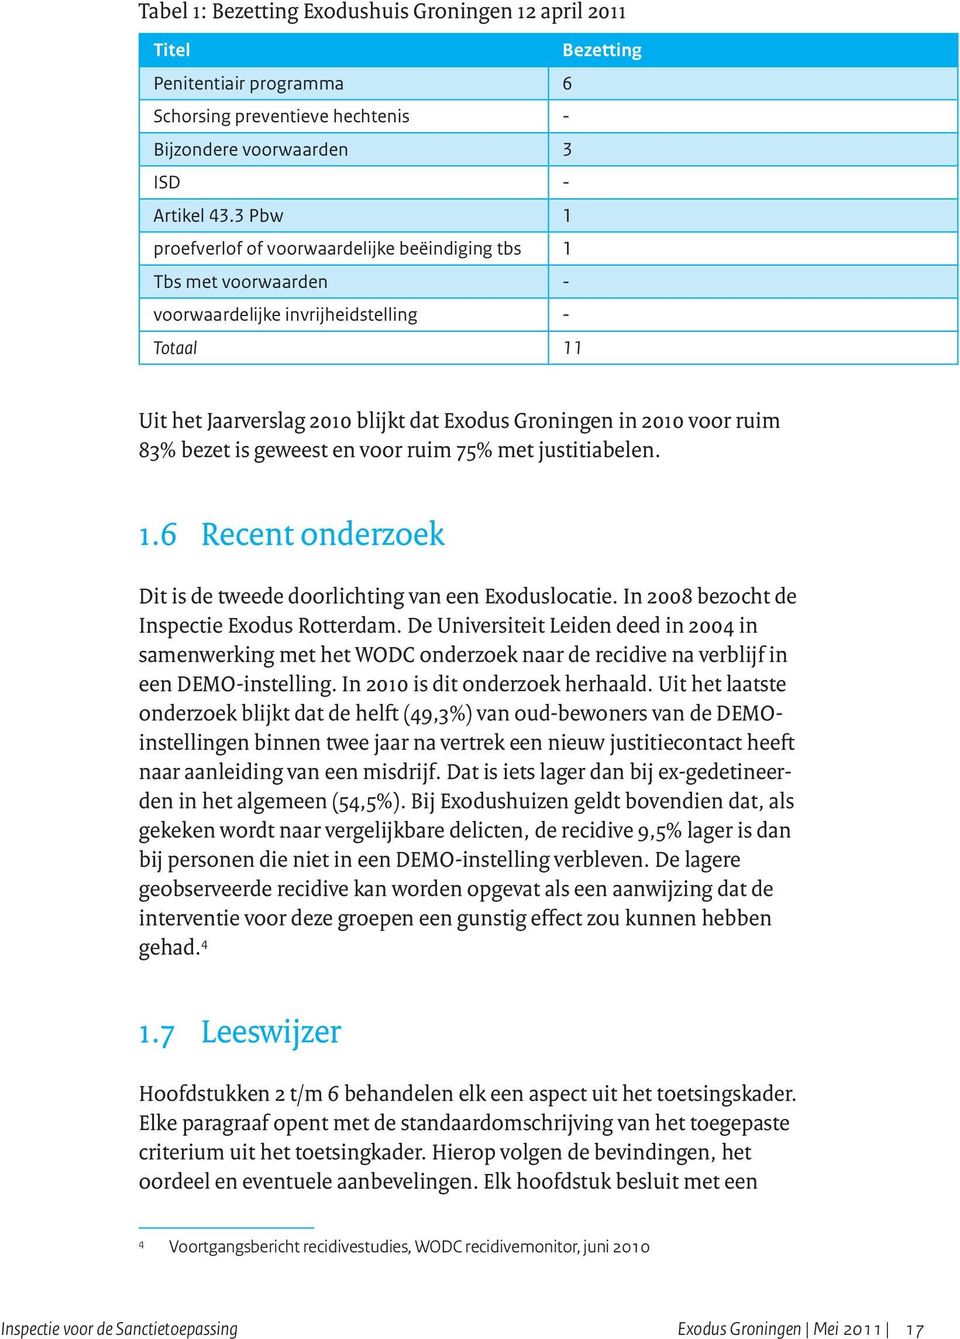 83% bezet is geweest en voor ruim 75% met justitiabelen. 1.6 Recent onderzoek Dit is de tweede doorlichting van een Exoduslocatie. In 2008 bezocht de Inspectie Exodus Rotterdam.